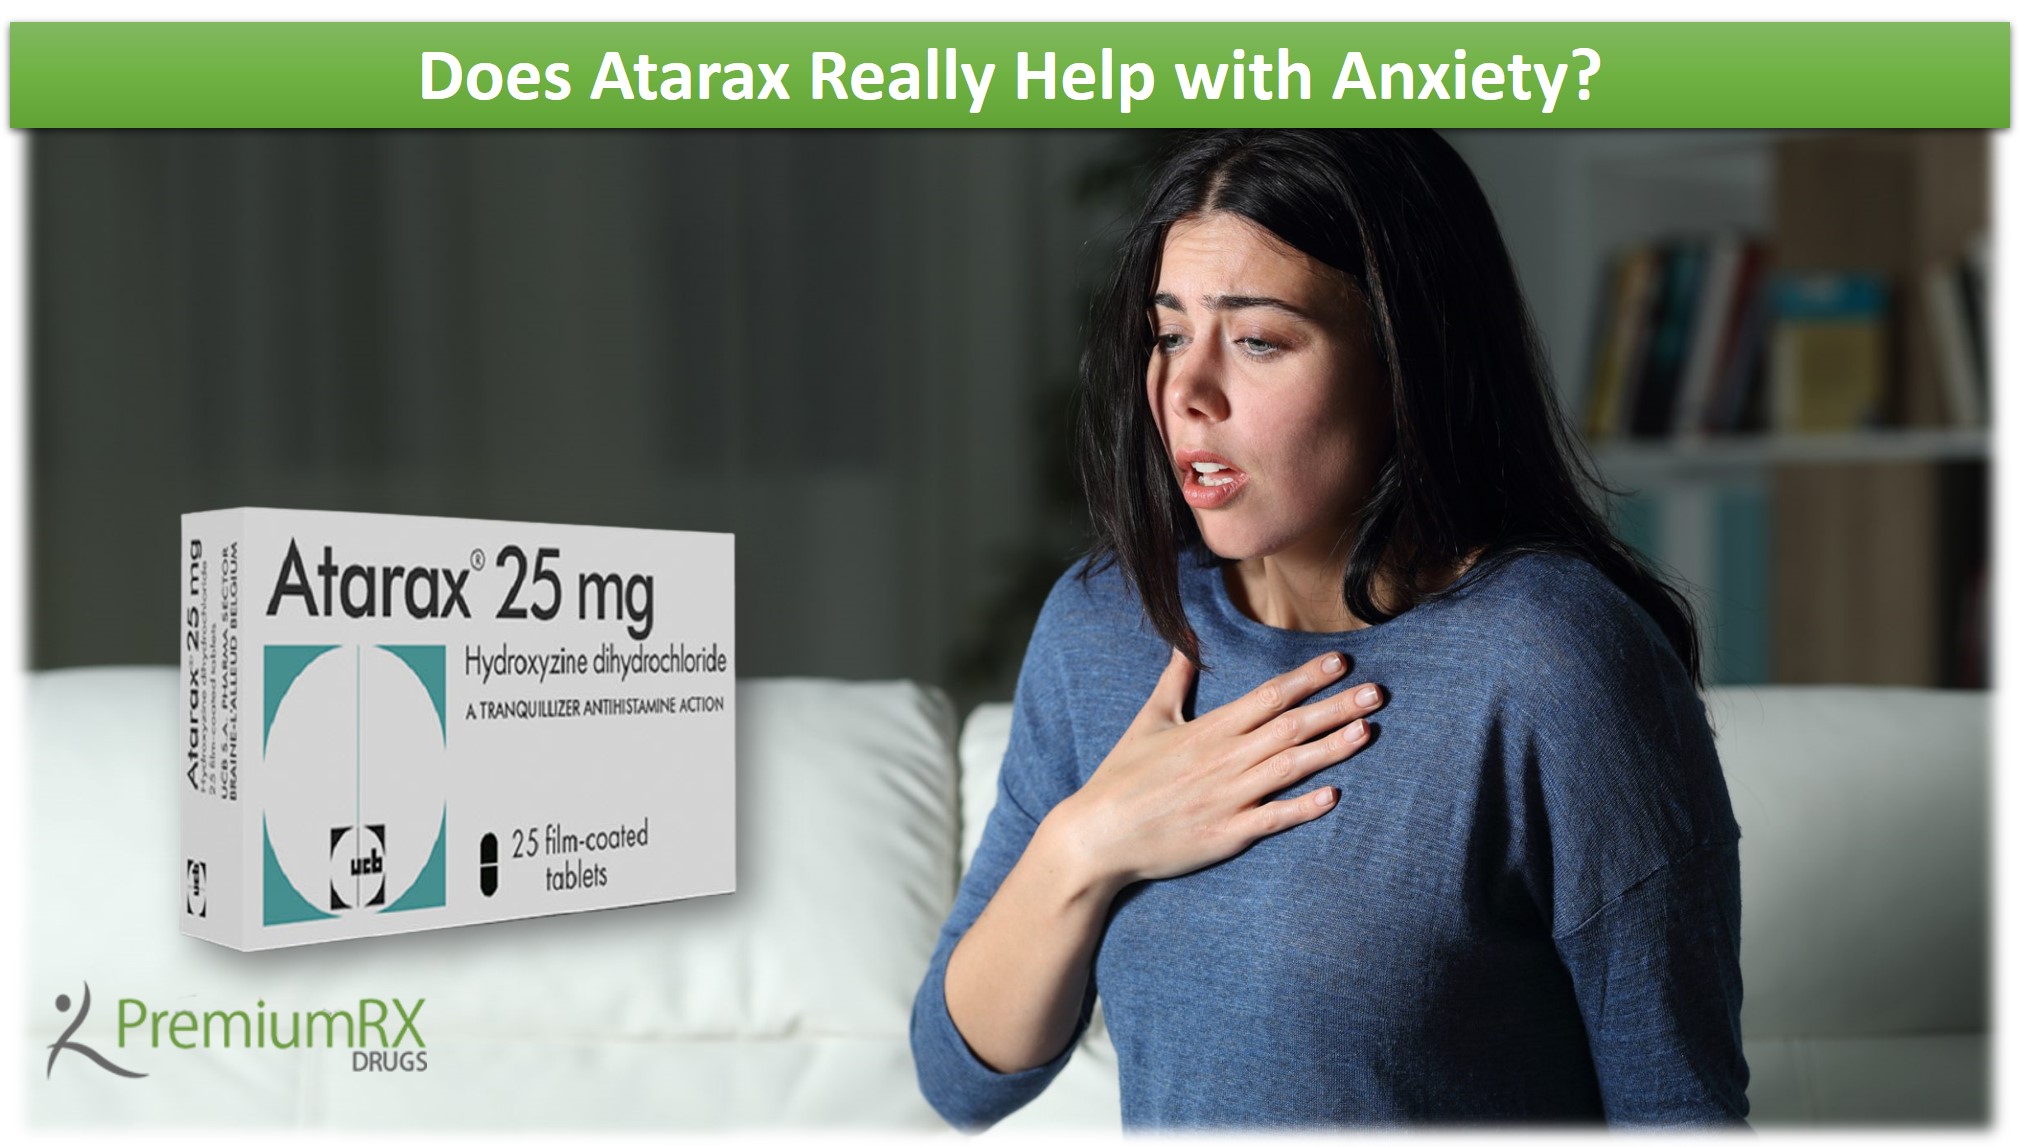 Does Atarax Really Help with Anxiety